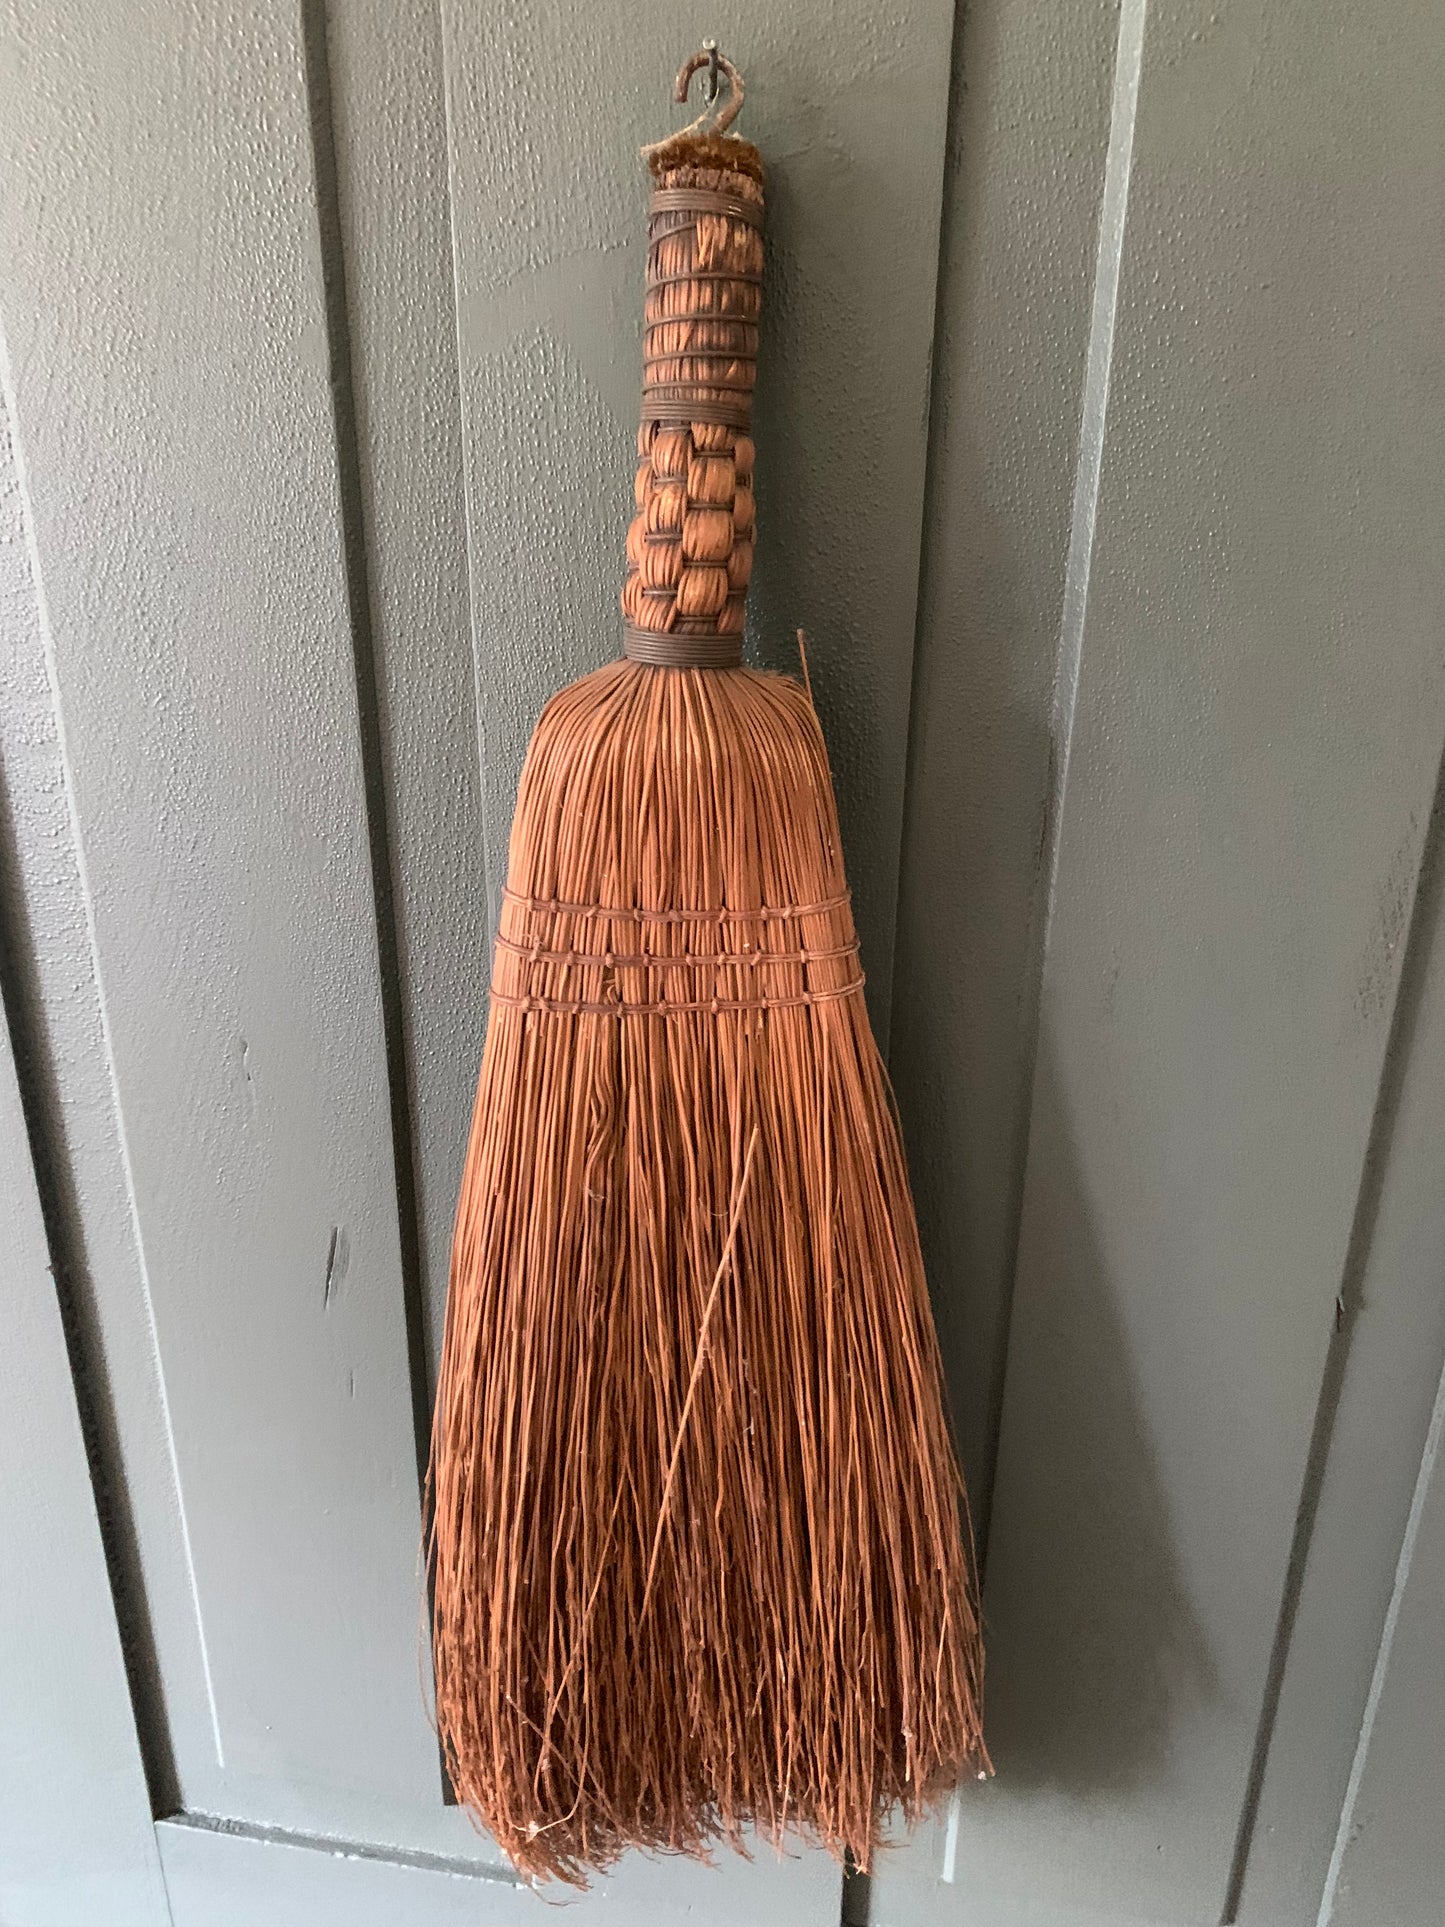 Vintage handmade broom